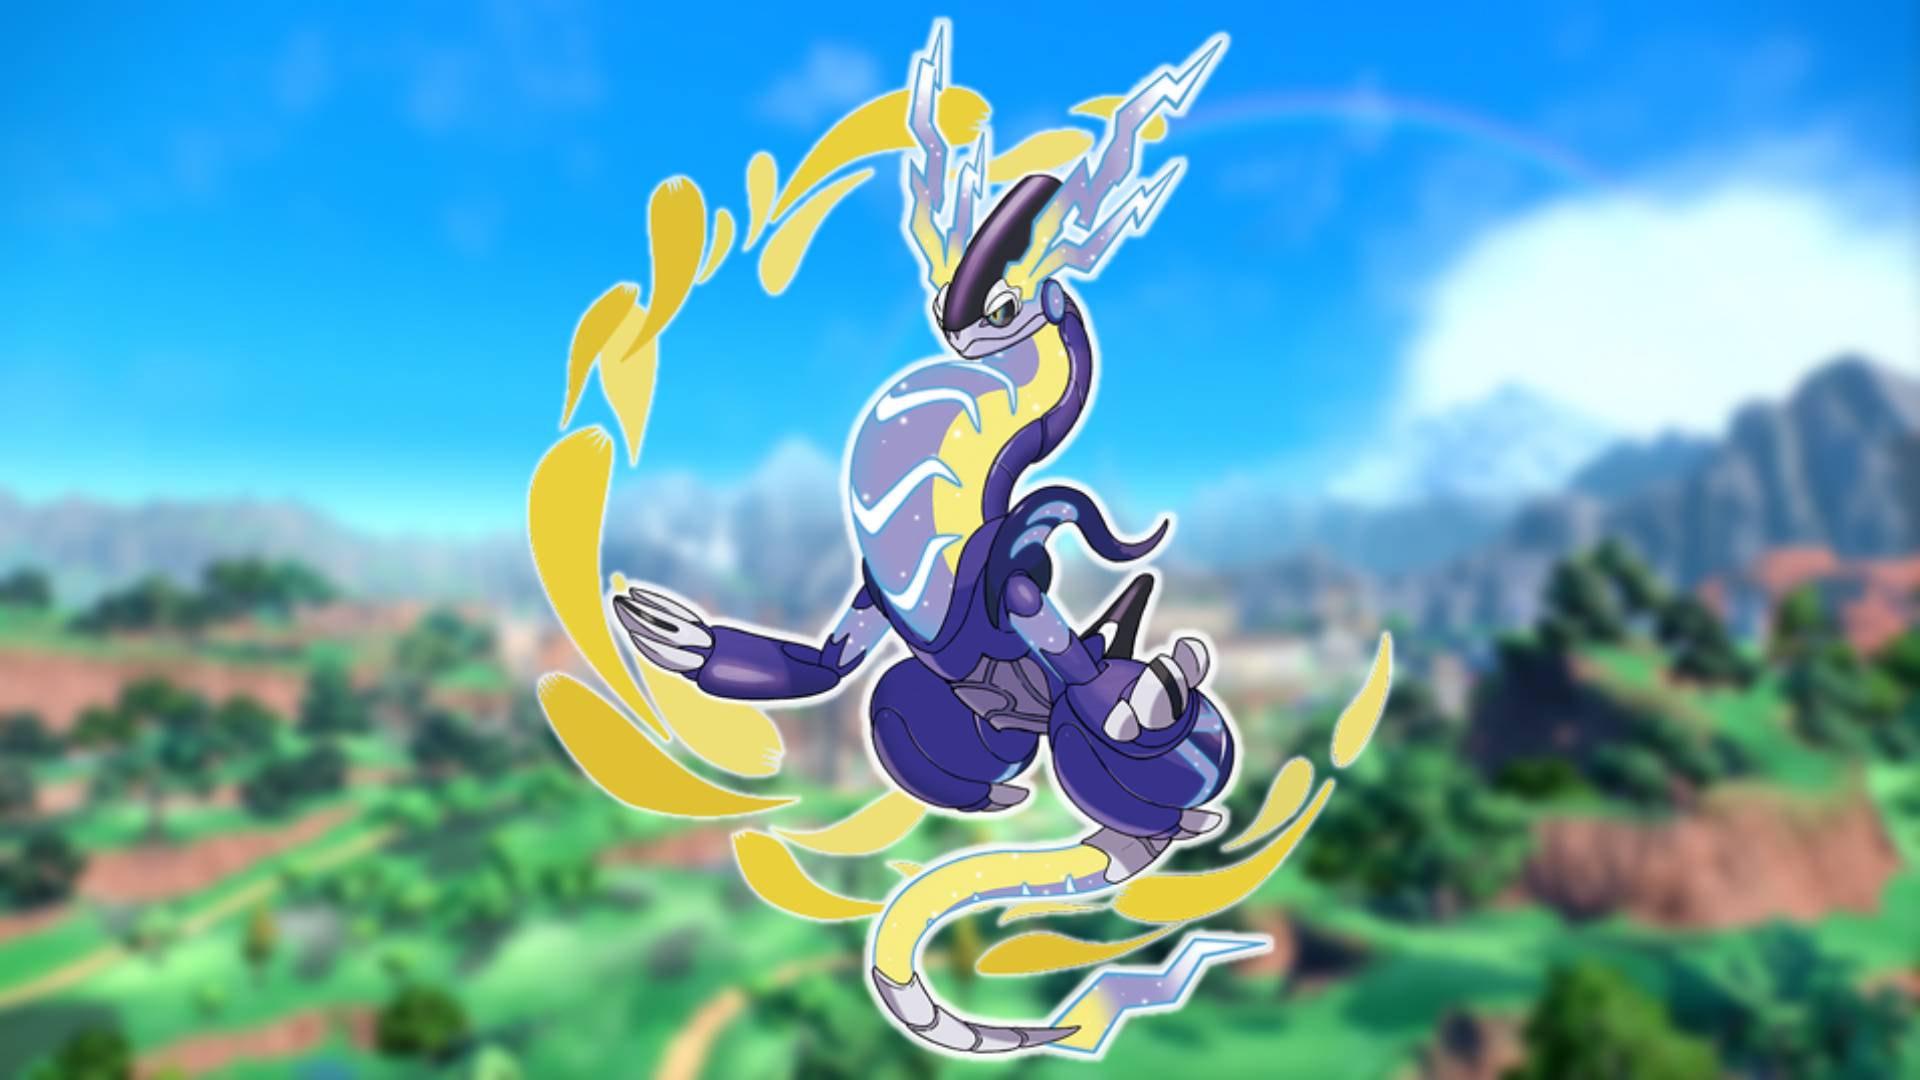 Pokémon Escarlata y Violeta nuevos Pokémon: un Pokémon con forma de serpiente es visible